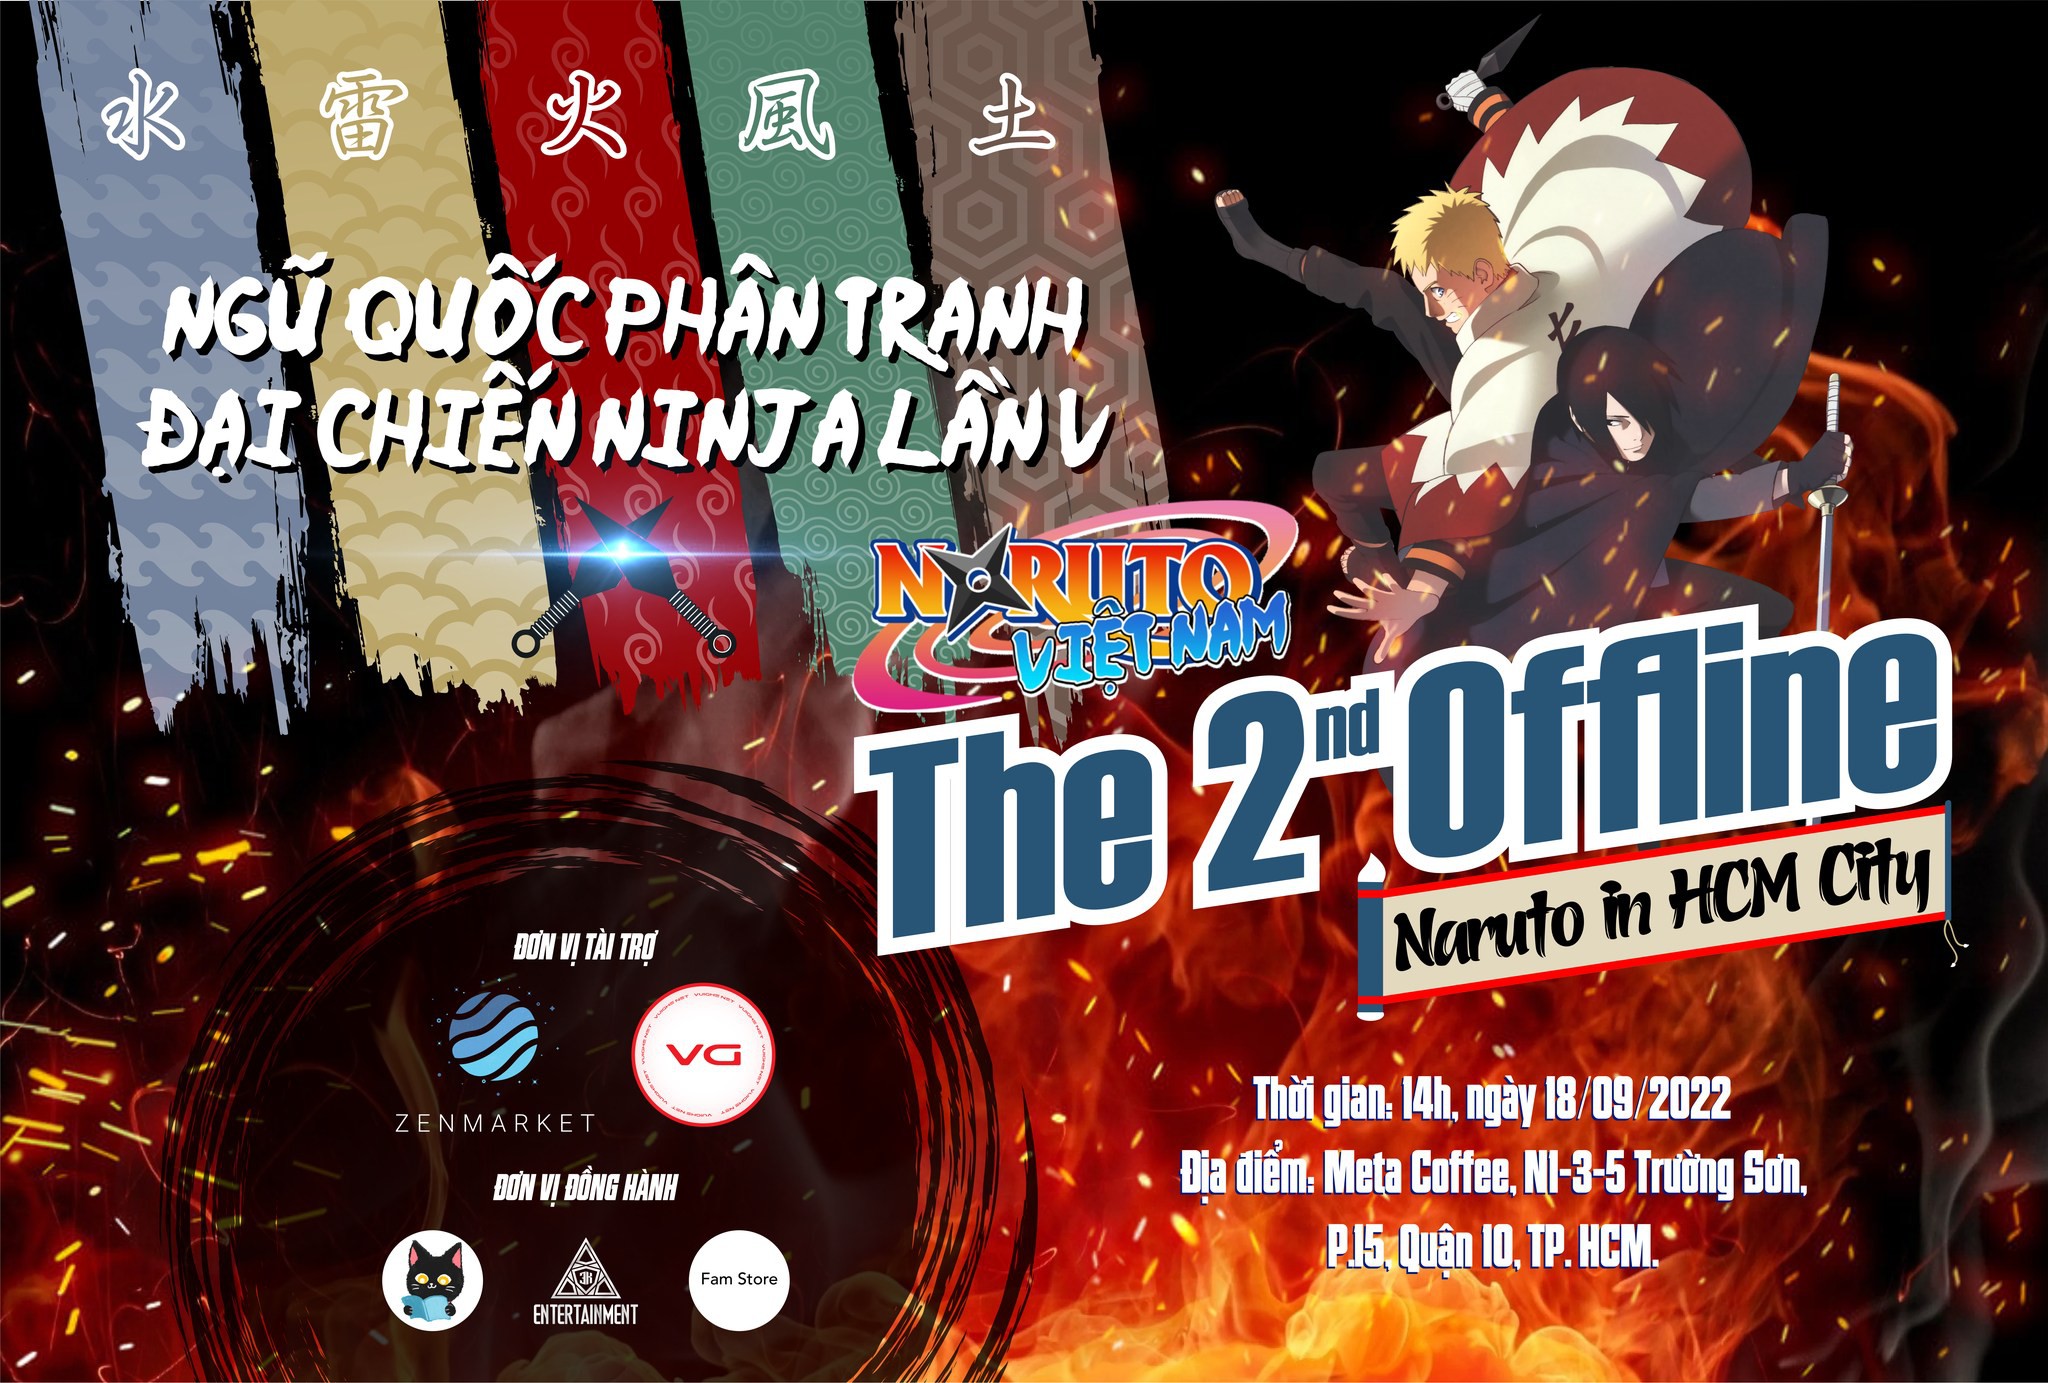 Sự kiện Offline Naruto 2022 dành cho các fan hâm mộ - Ngũ quốc phân tranh - Đại chiến Ninja lần V